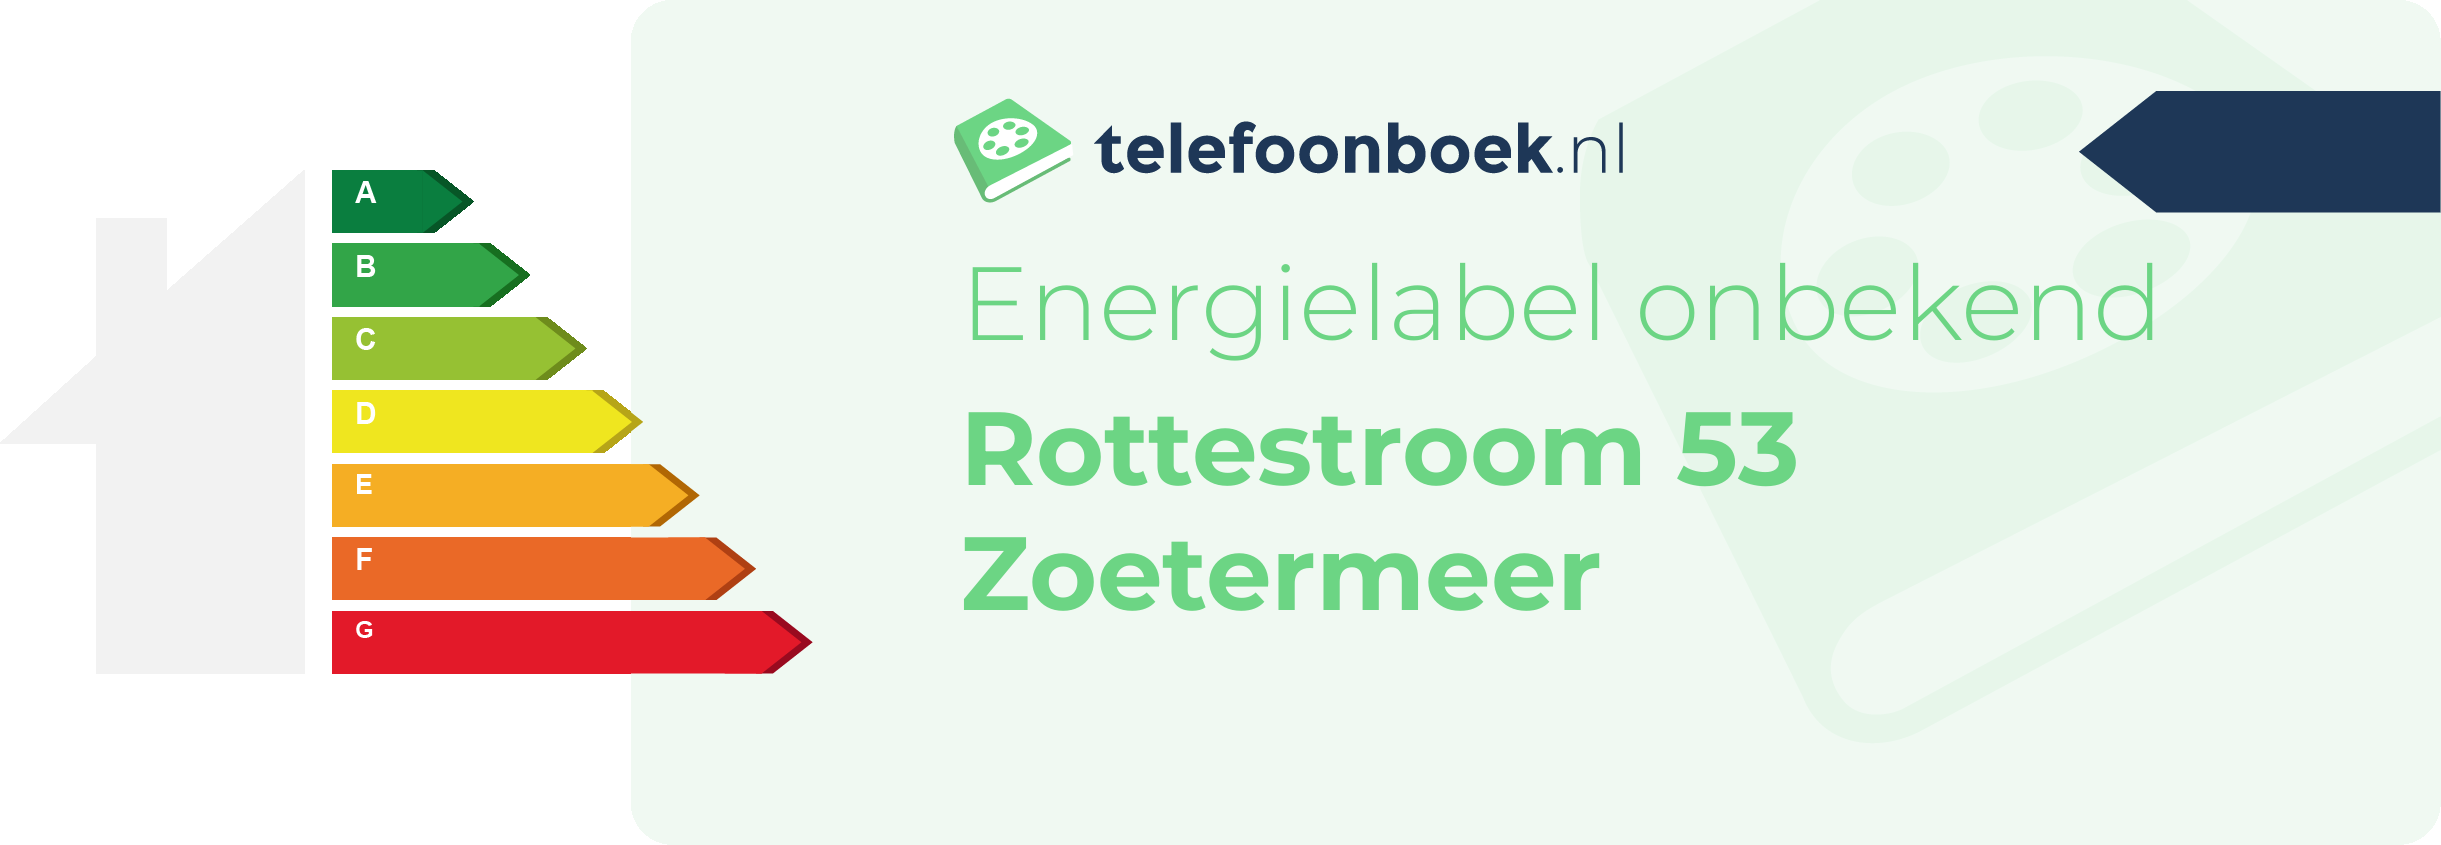 Energielabel Rottestroom 53 Zoetermeer